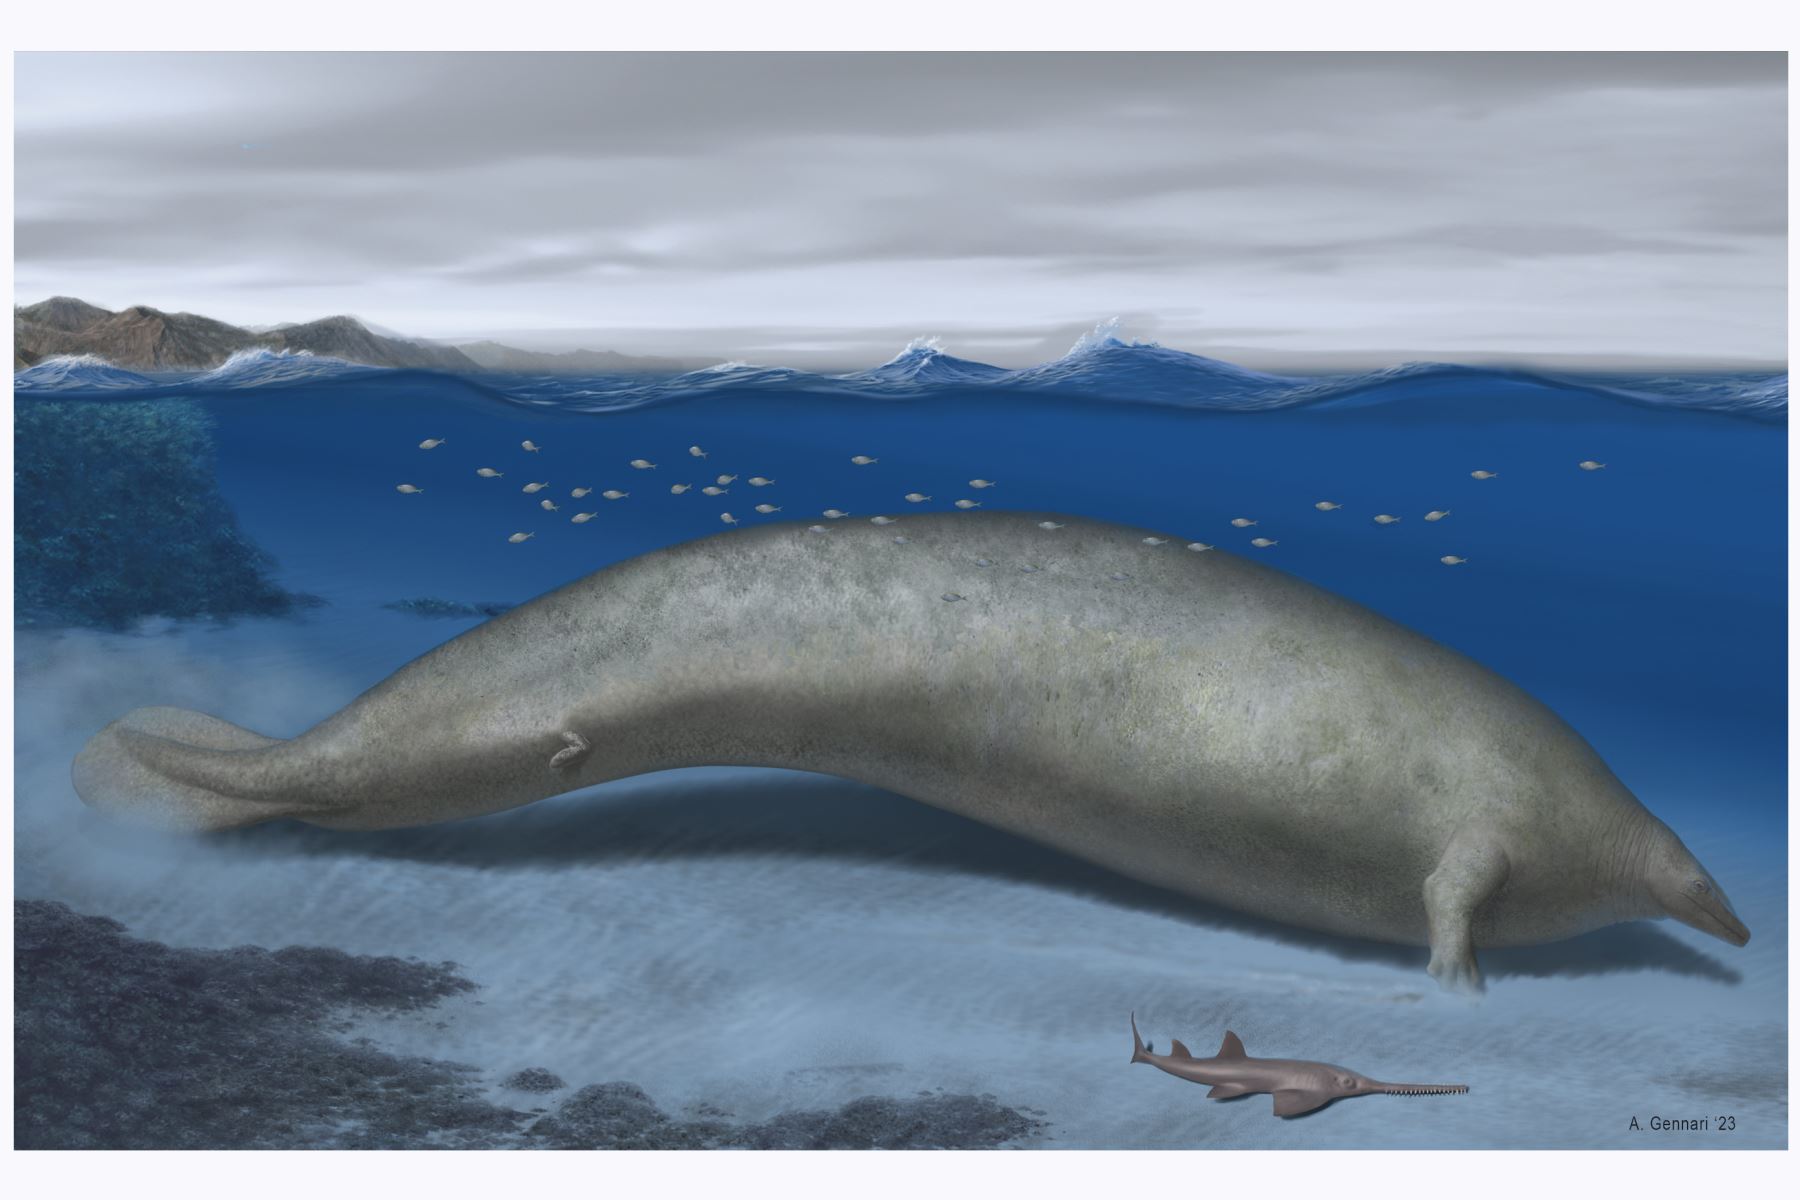 Reconstrucción de "Perucetus colossus", cuyo hallazgo confirma que el registro fósil del territorio peruano es uno de los más ricos del mundo en animales marinos. Artista: Alberto Gennari